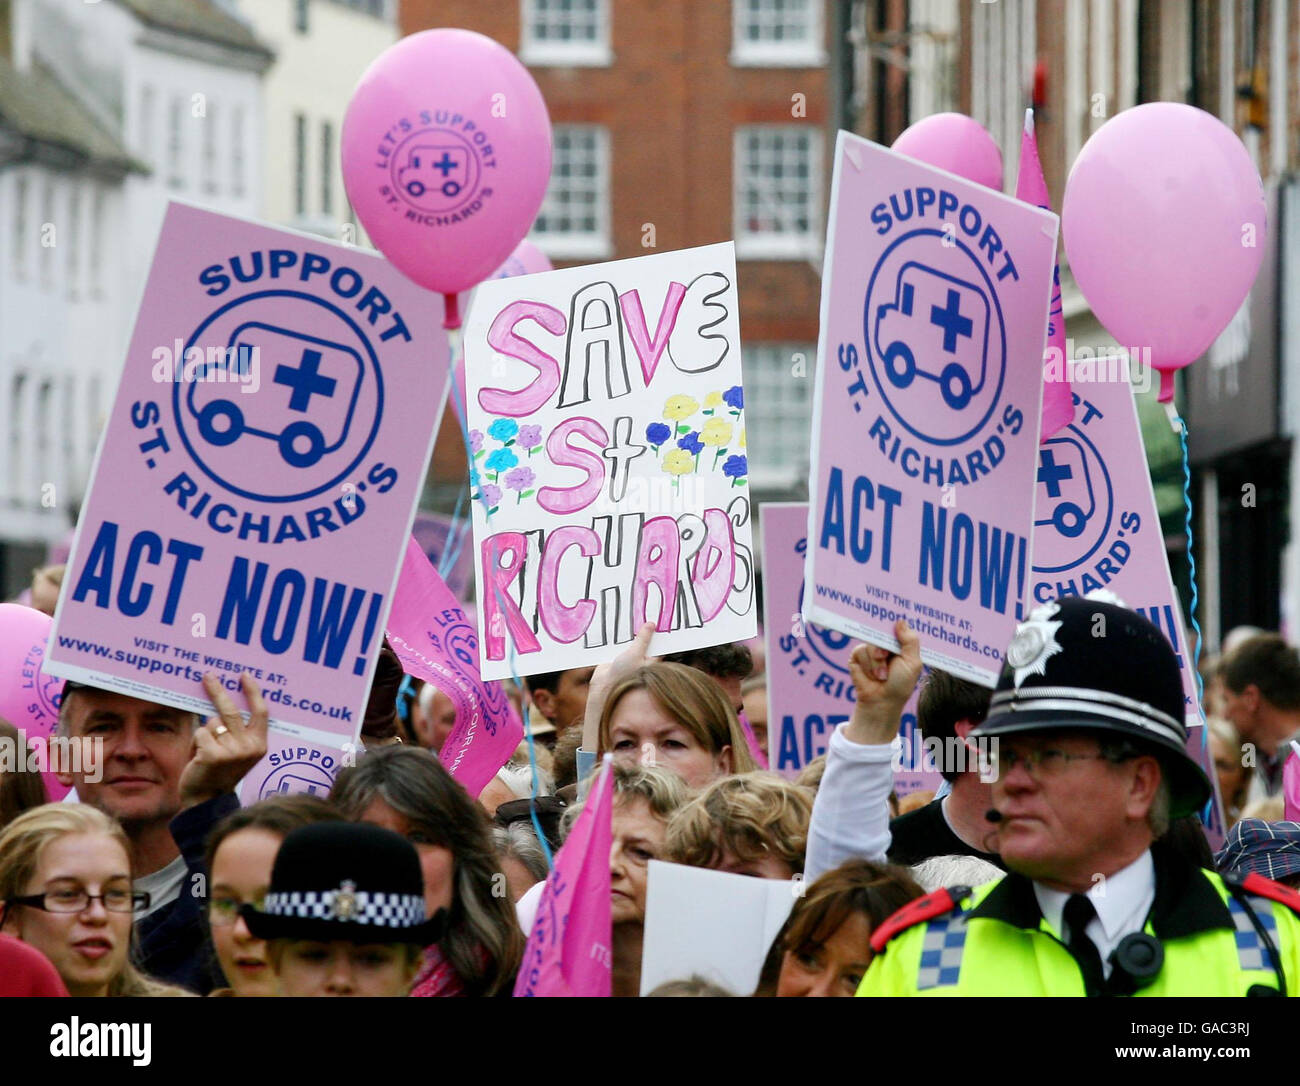 Demonstranten halten Plakate während einer Kundgebung im Priory Park Chichester, Sussex, gegen vorgeschlagene Kürzungen der Dienste im St. Richard's Hospital. Stockfoto